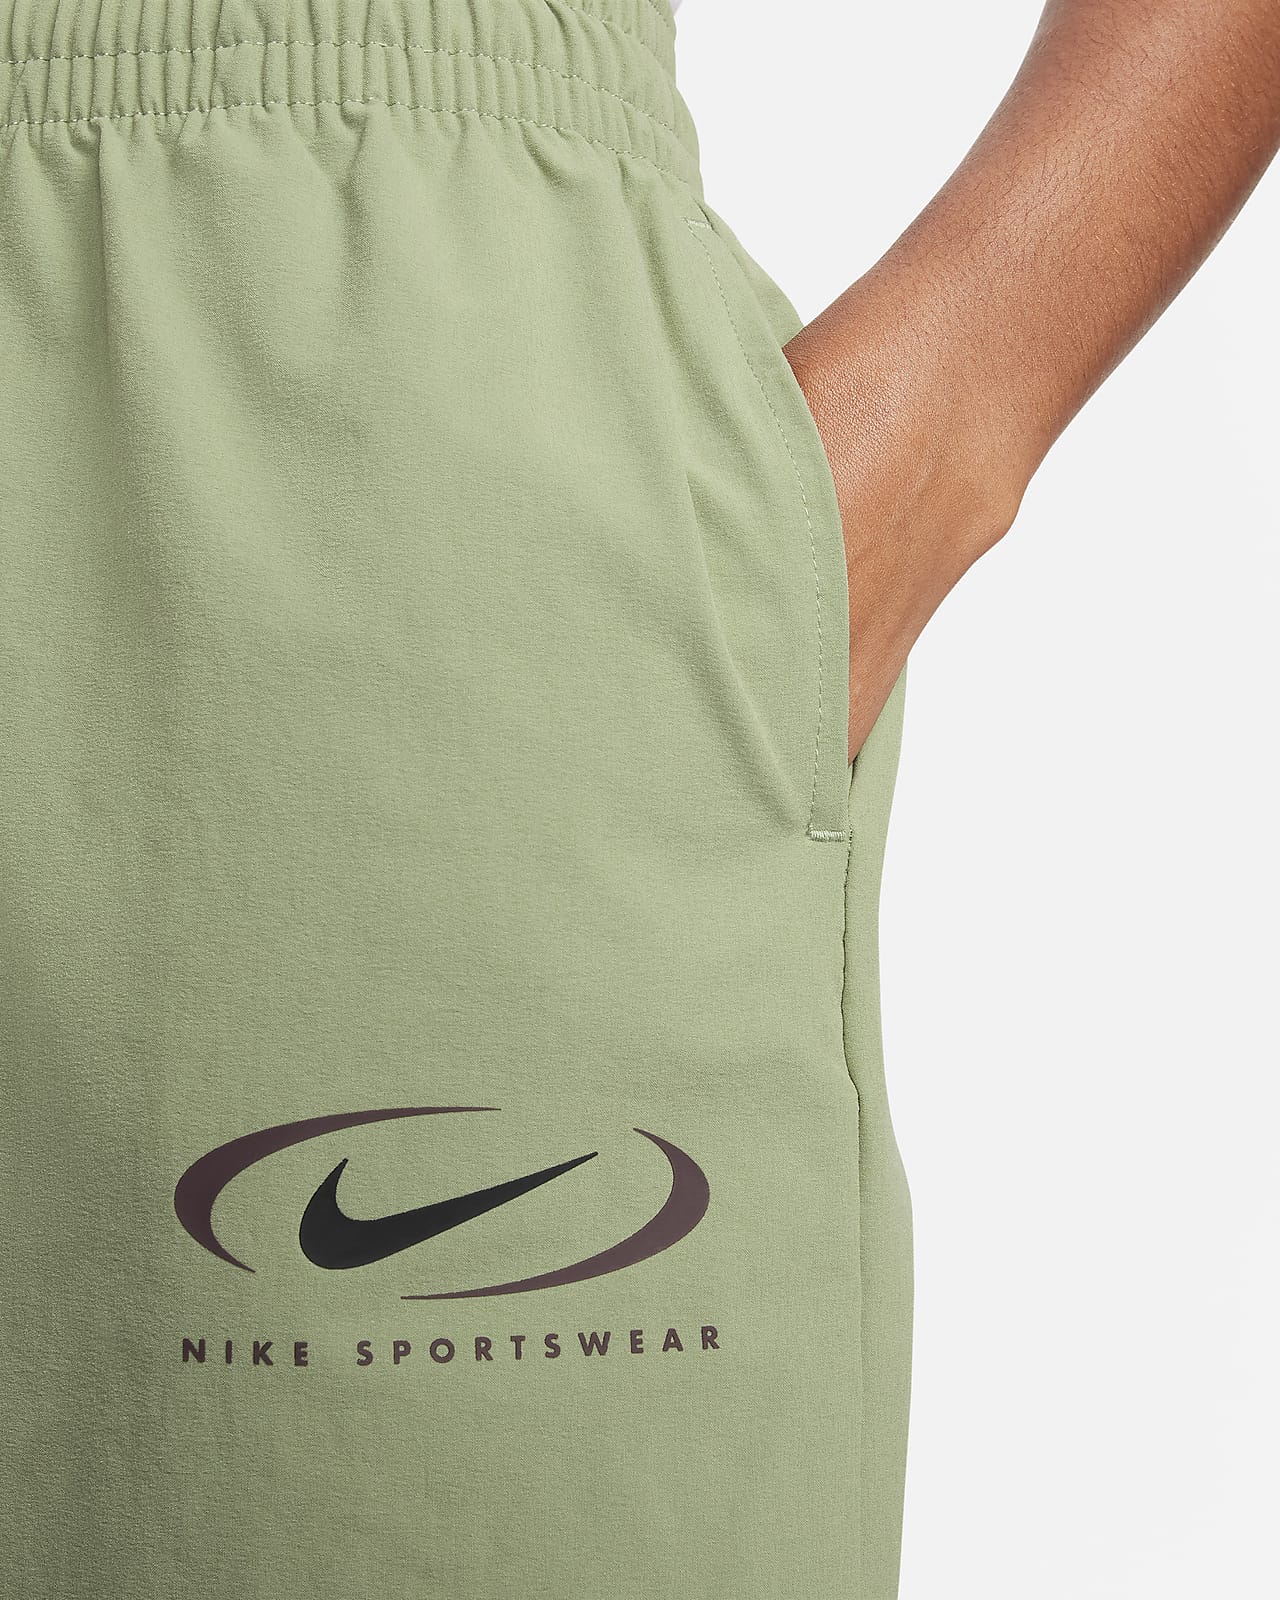 Nike Sportswear Women's Woven Joggers. Nike DK